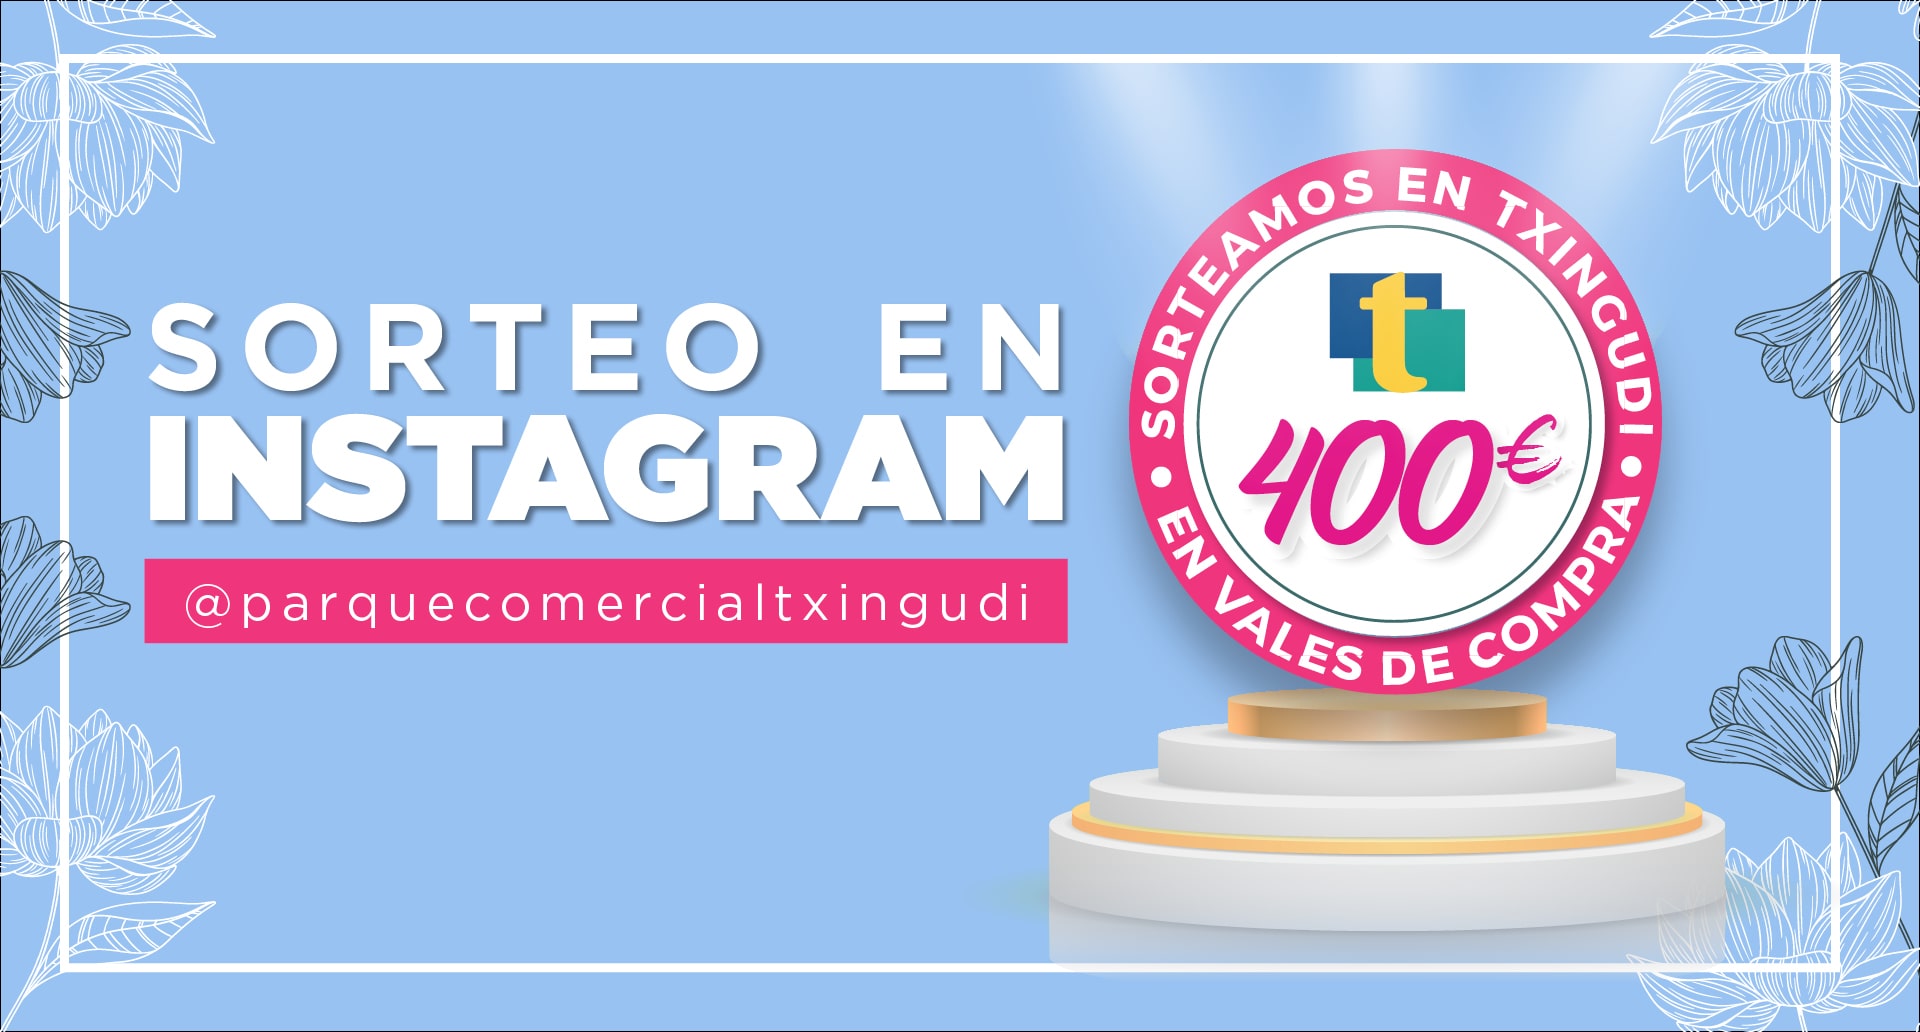 ¡Sorteamos 400€ en nuestra cuenta de Instagram! 